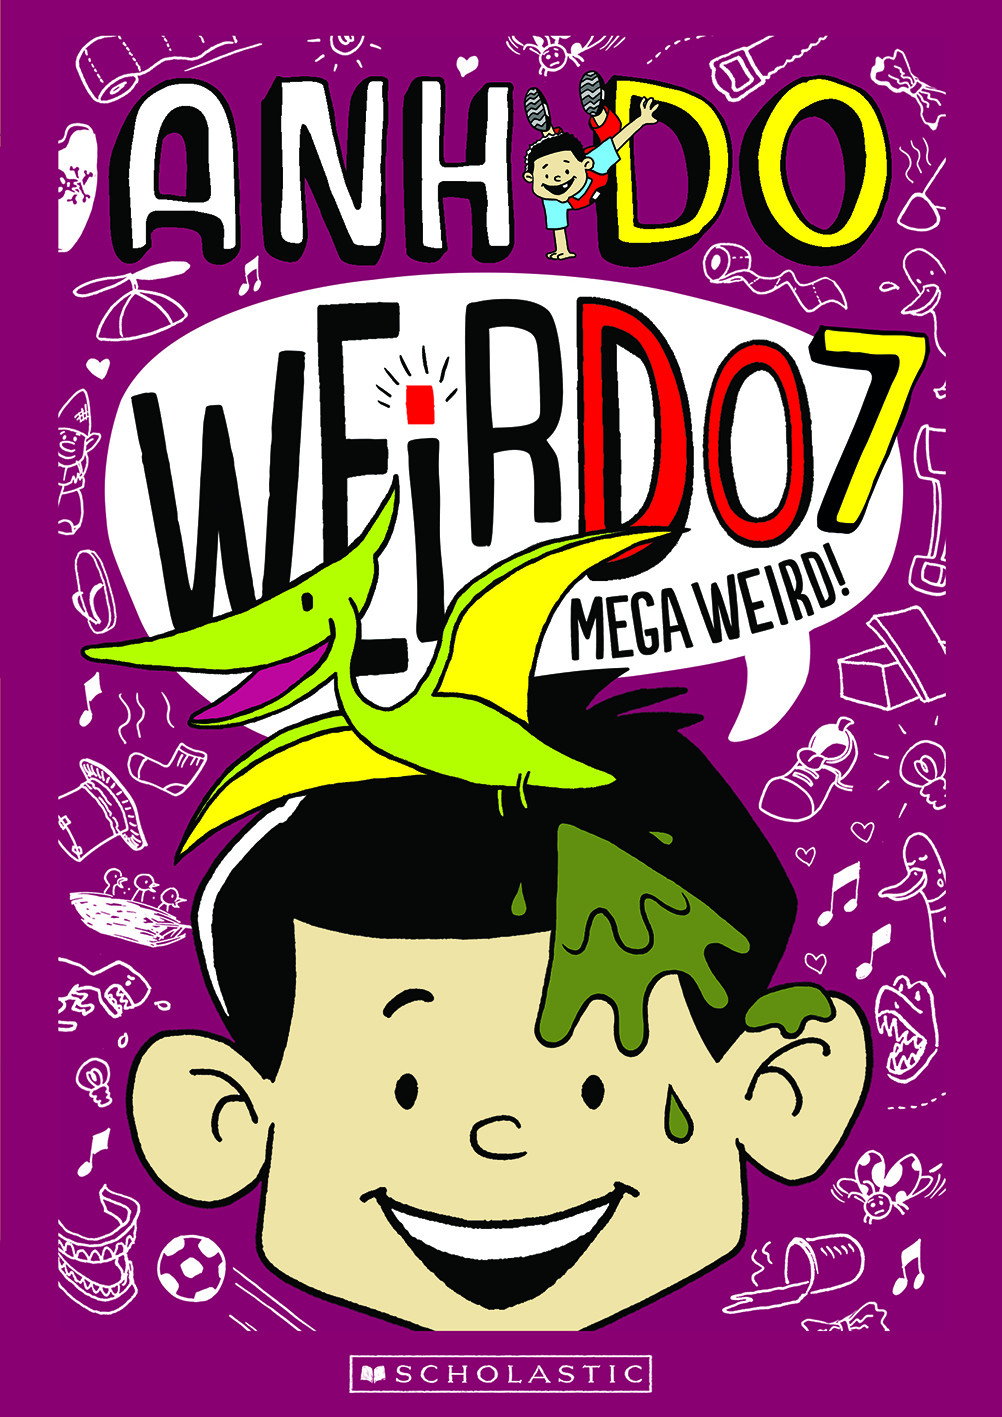 Anh Do - Weirdo 7 Book